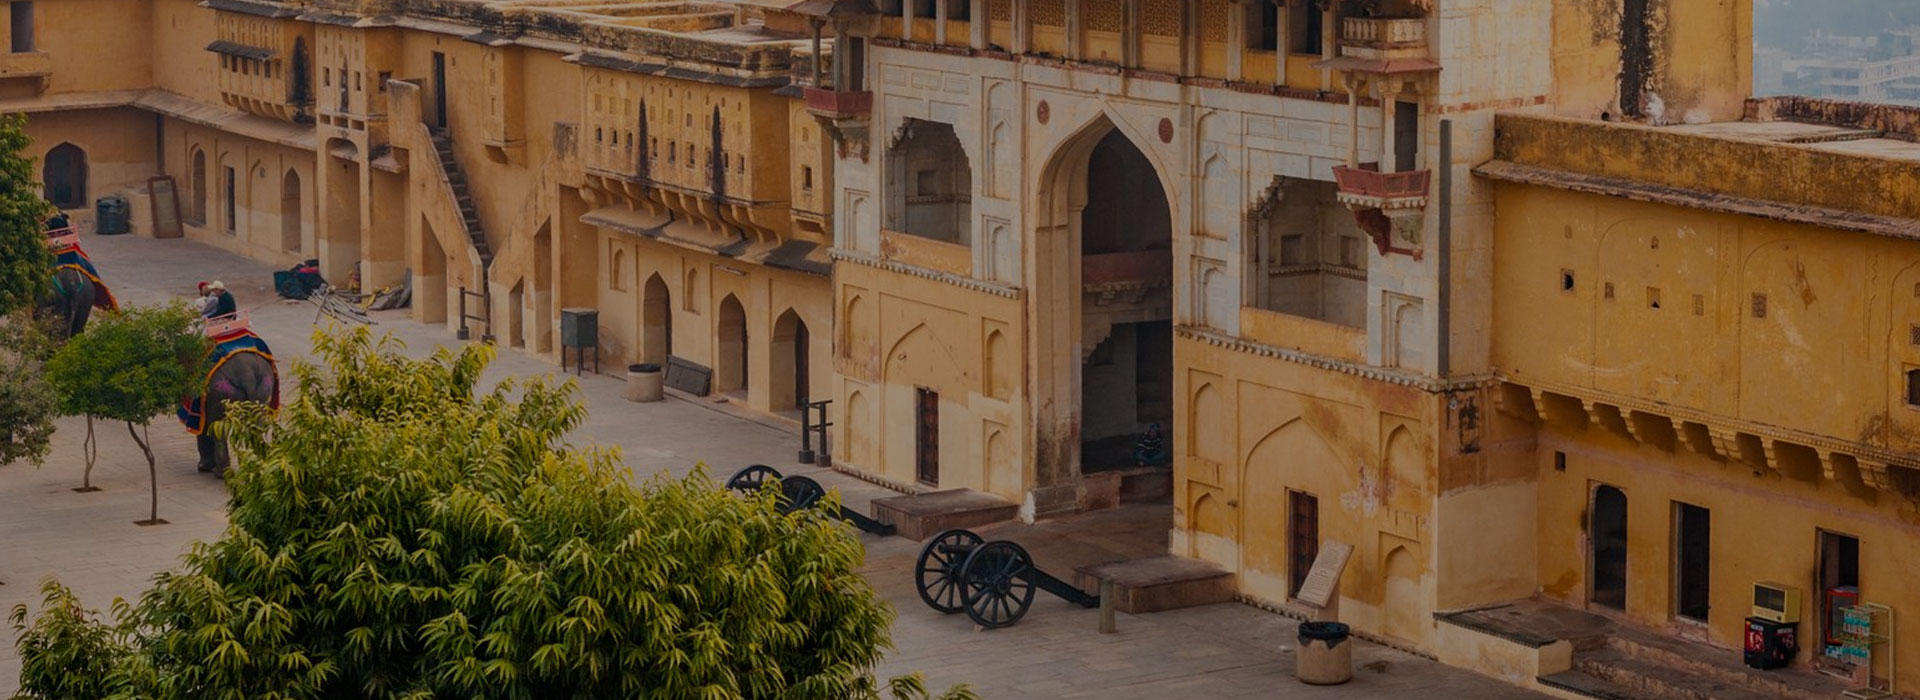 Delhi, Agra and Jaipur Tour by Car – 3N4D